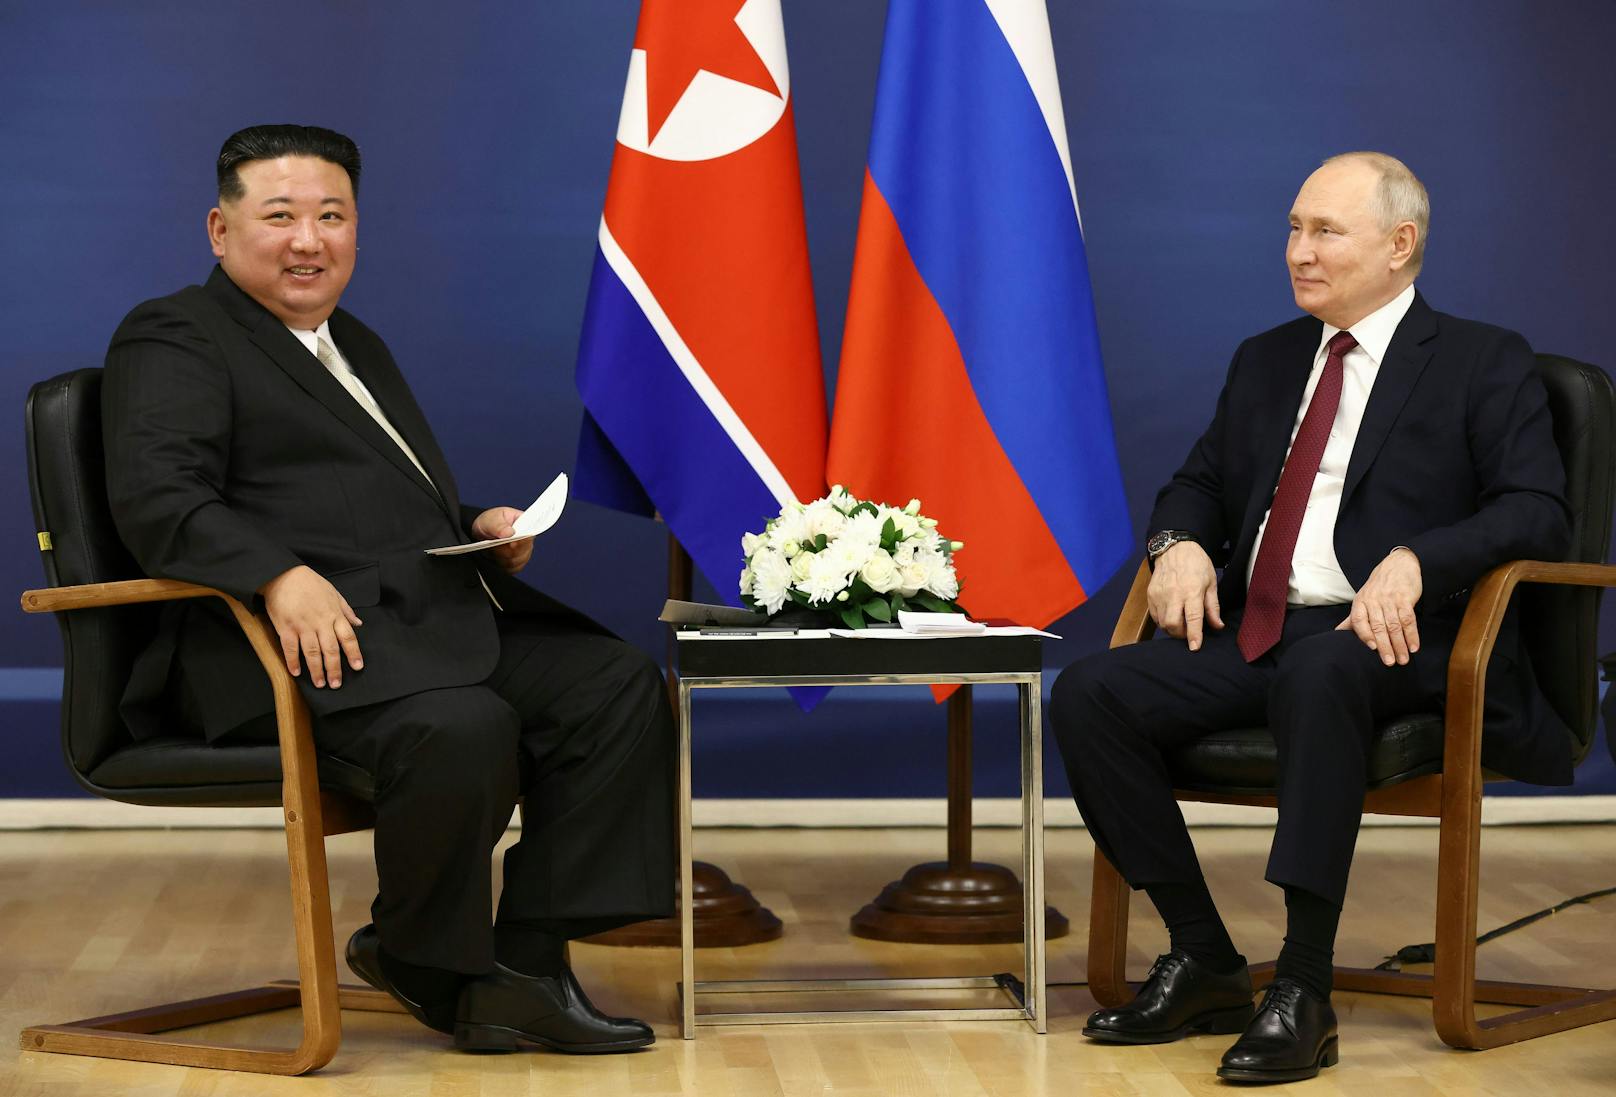 Rund um das Treffen mit Kim Jong-un gibt es erneut Spekulationen rund um den Gesundheitszustand von Wladimir Putin. 